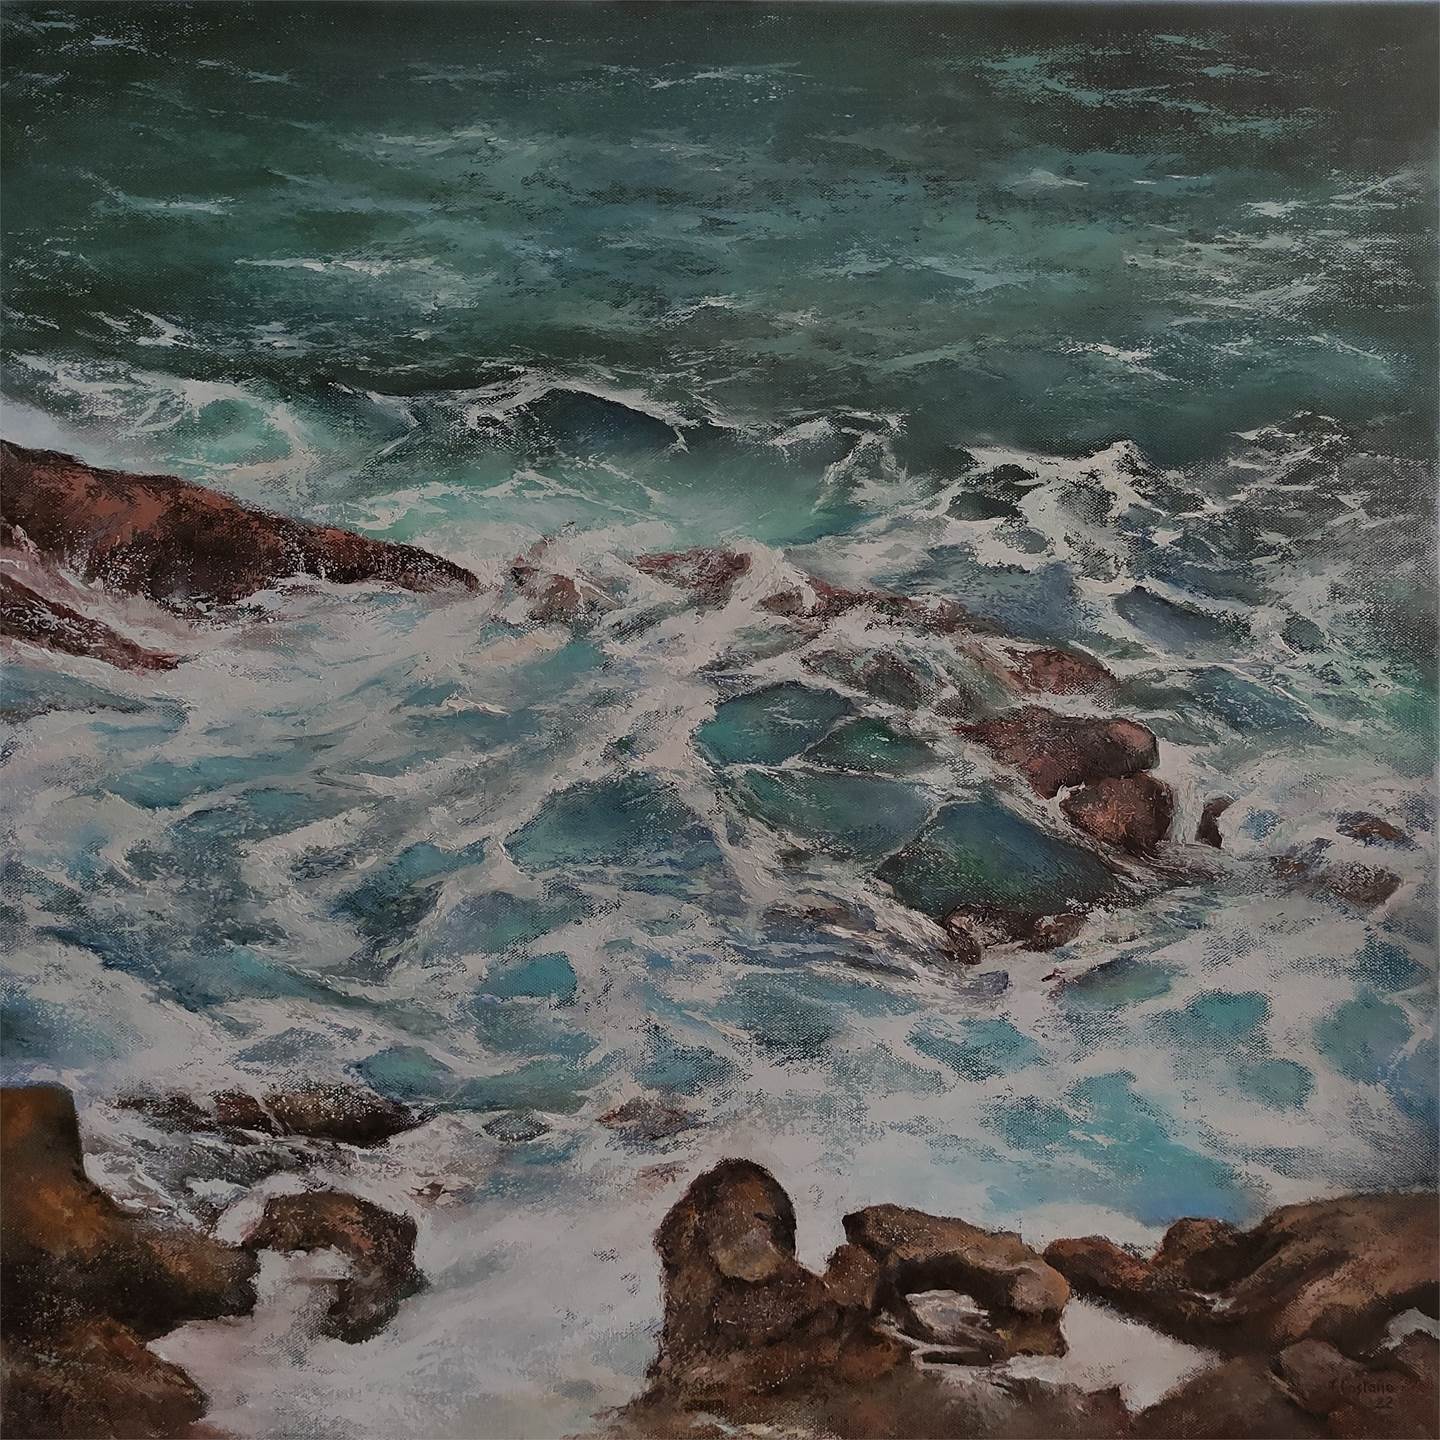 Oleaje en el Mar Cantábrico, original Landscape Oil Painting by TOMAS CASTAÑO